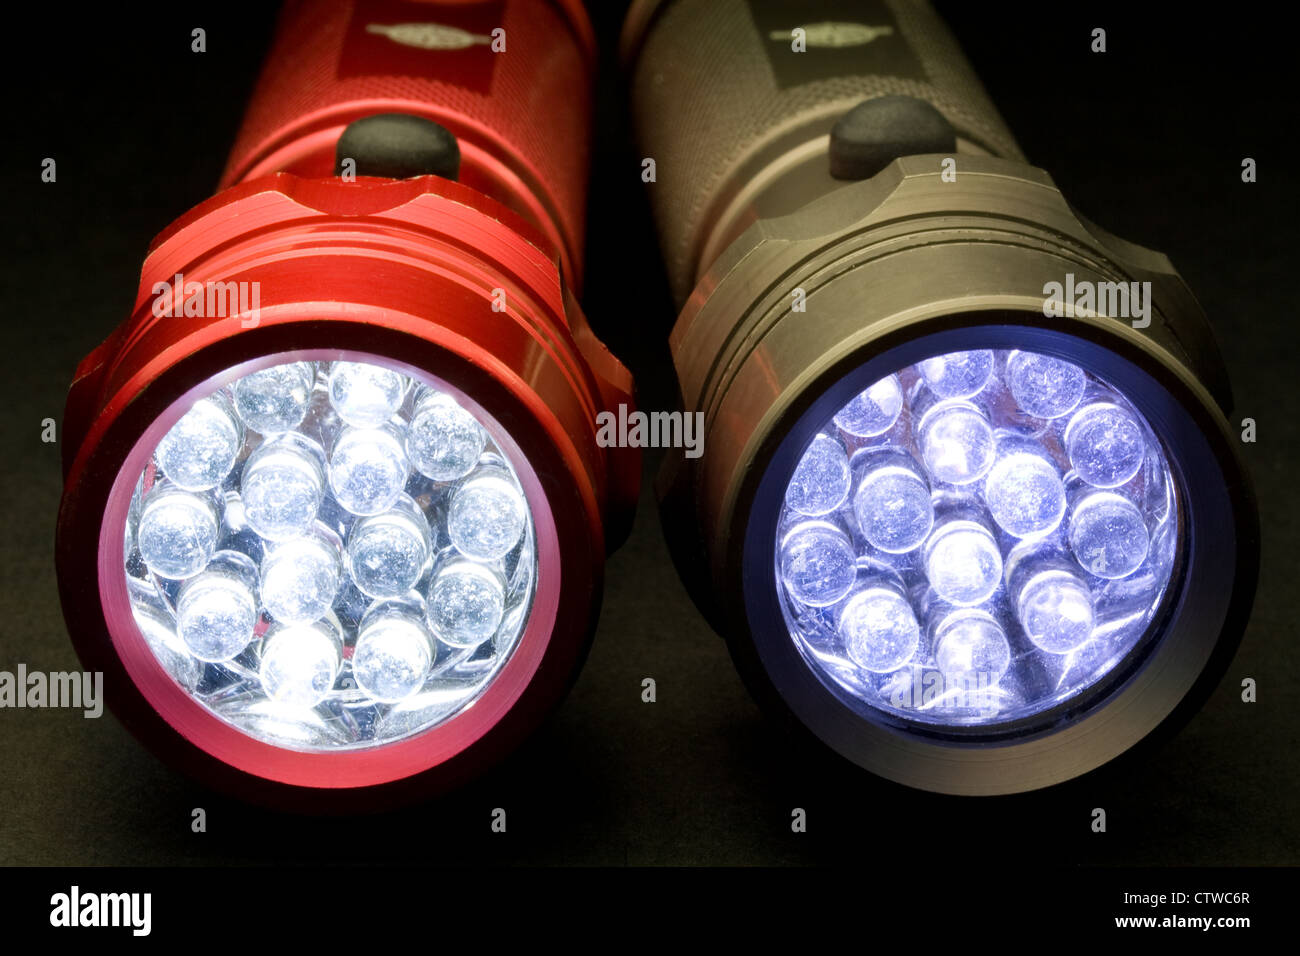 Deux lampes de poche LED moderne - activée (LED signifie Light Emitting Diode) Banque D'Images